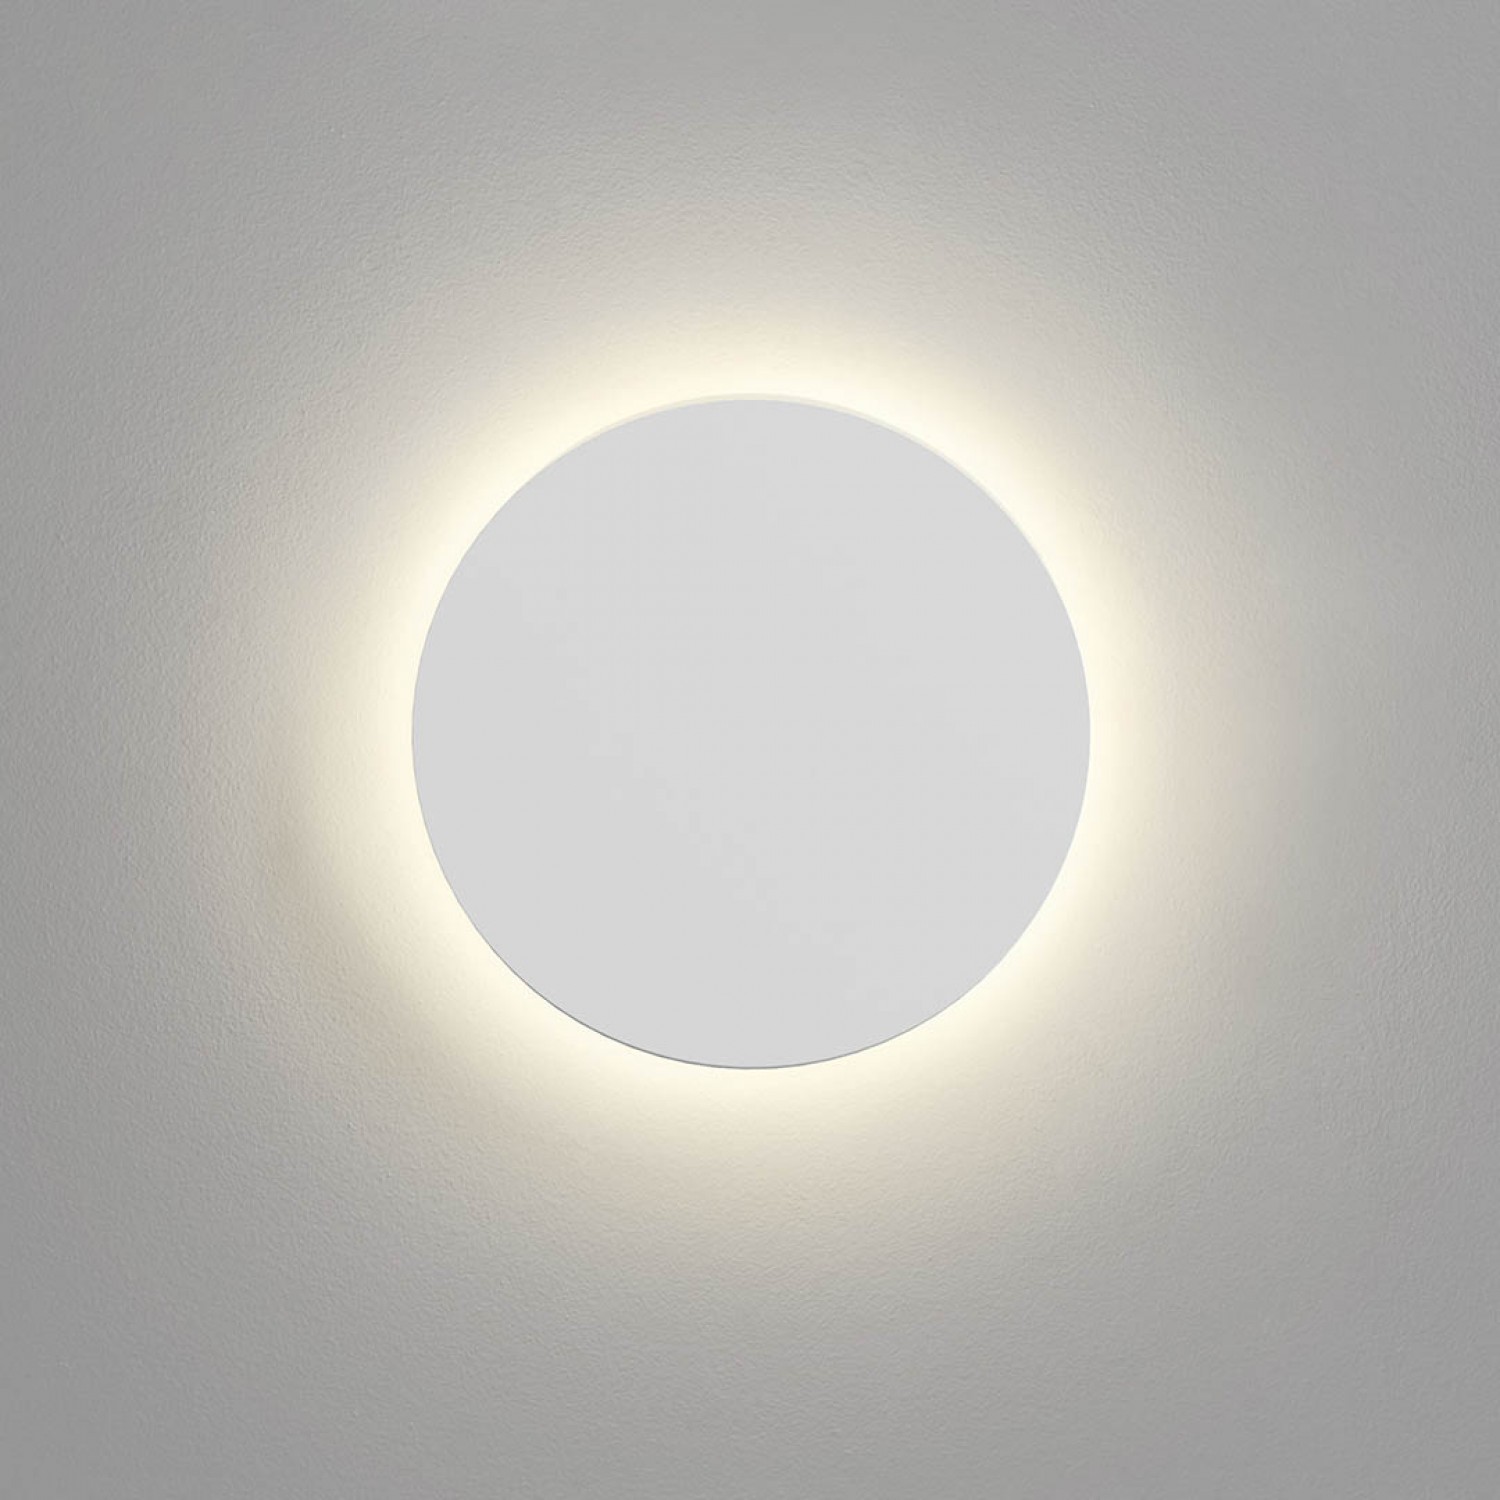 Бра Astro Eclipse Round 250 LED 2700K 1333005